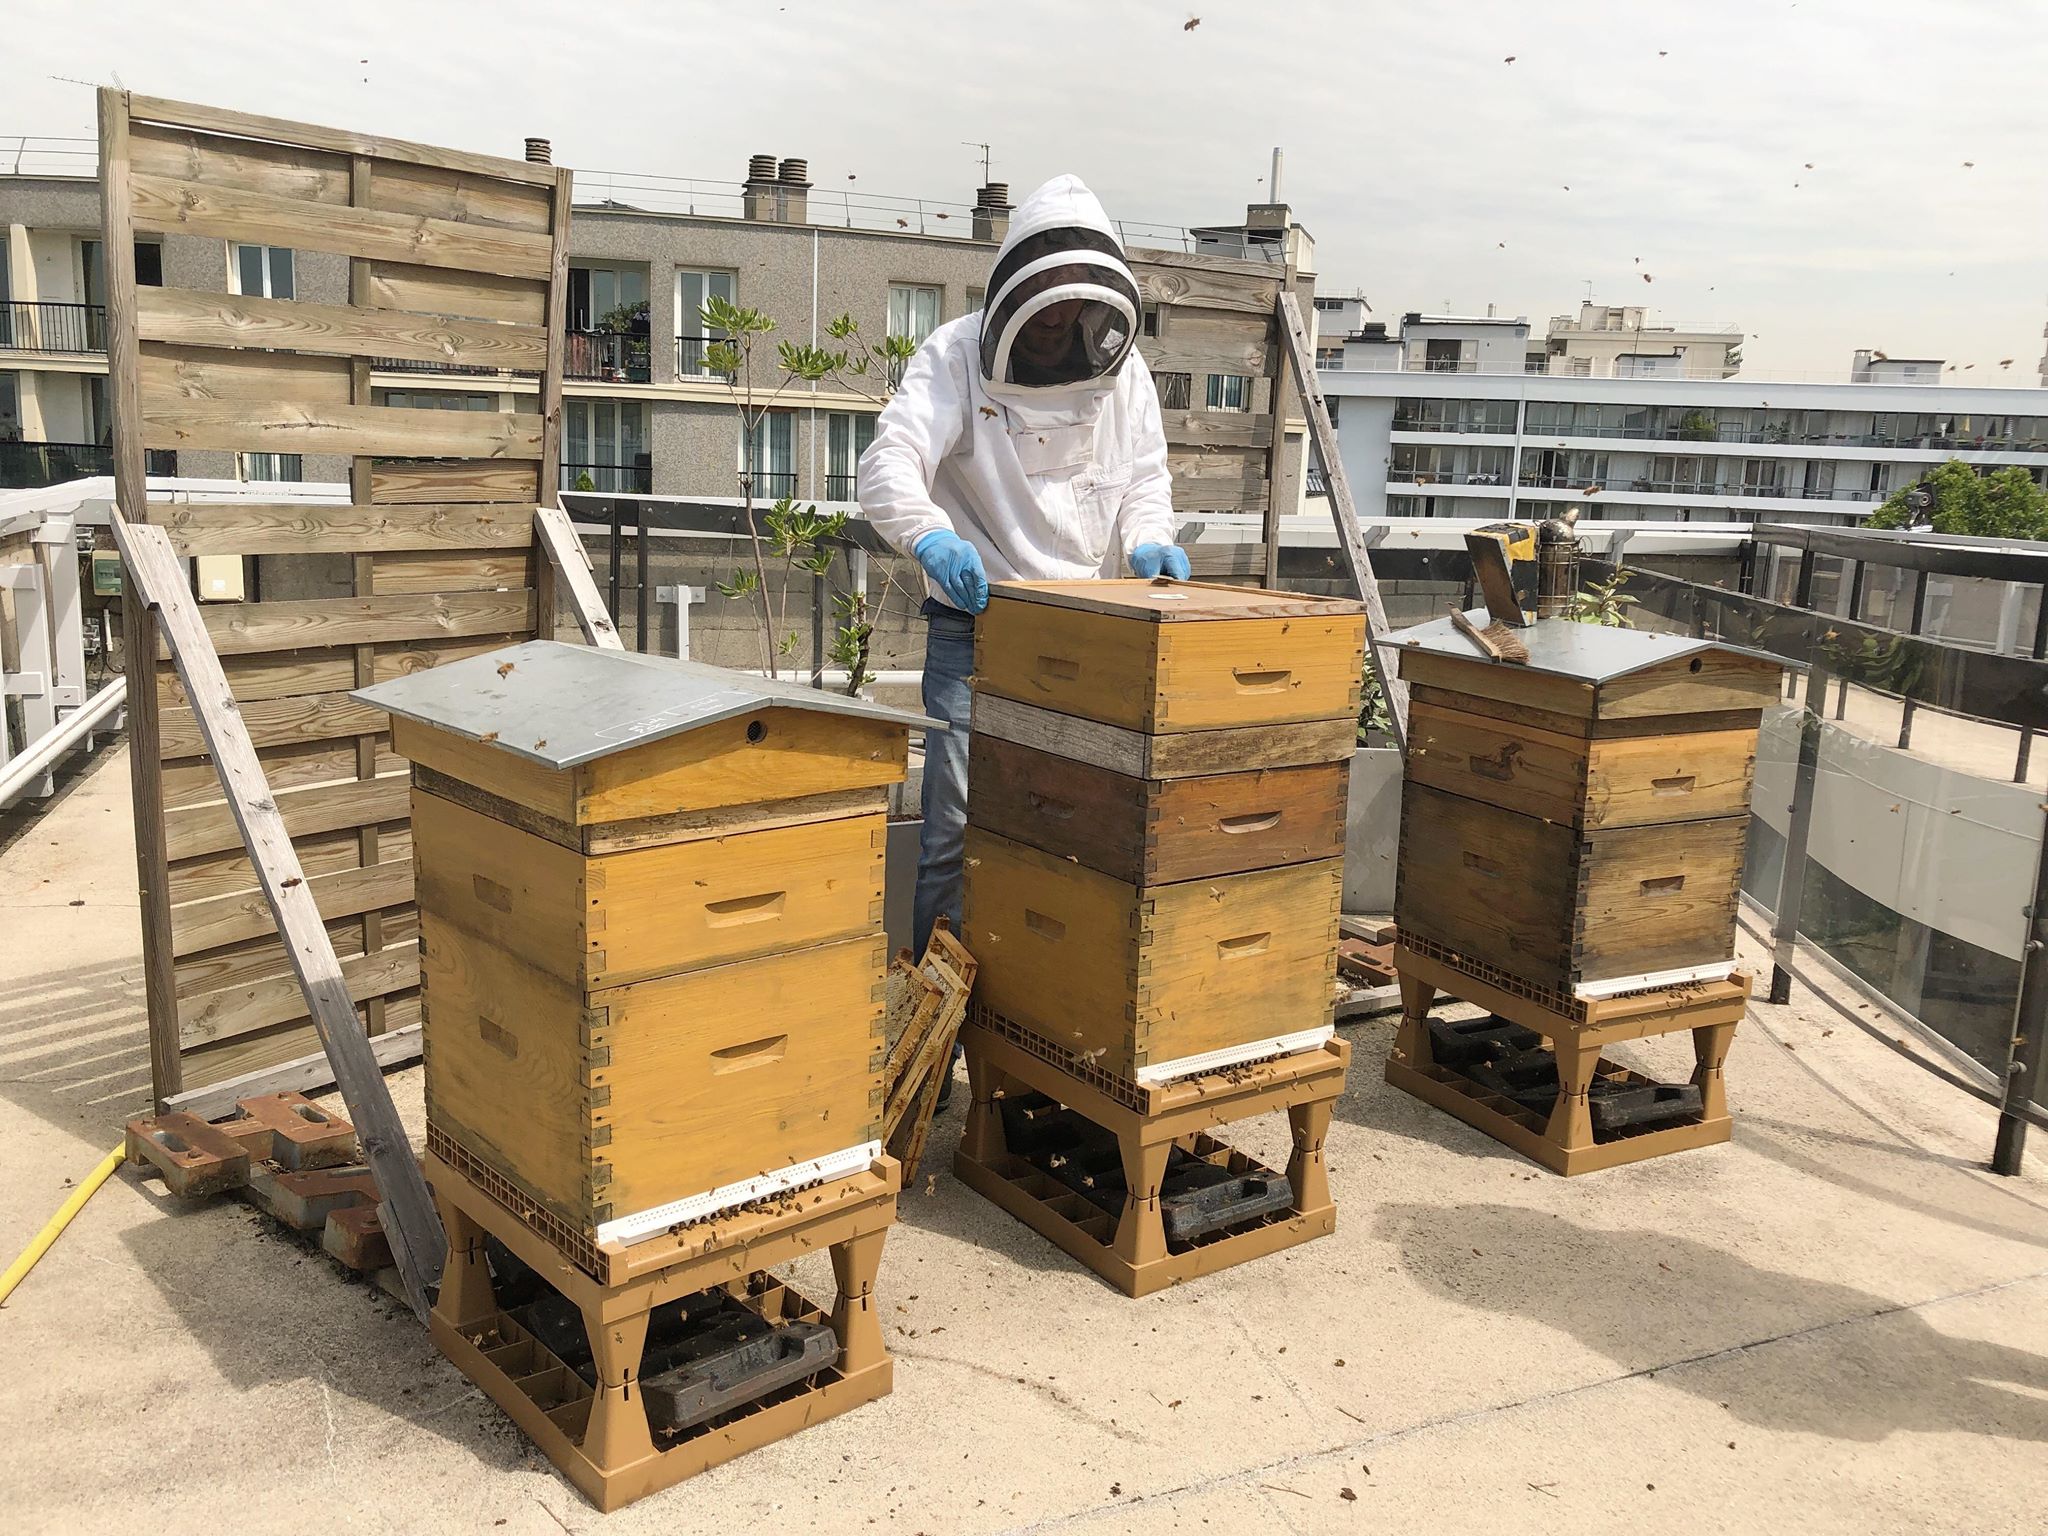 Les ruches sur le toit